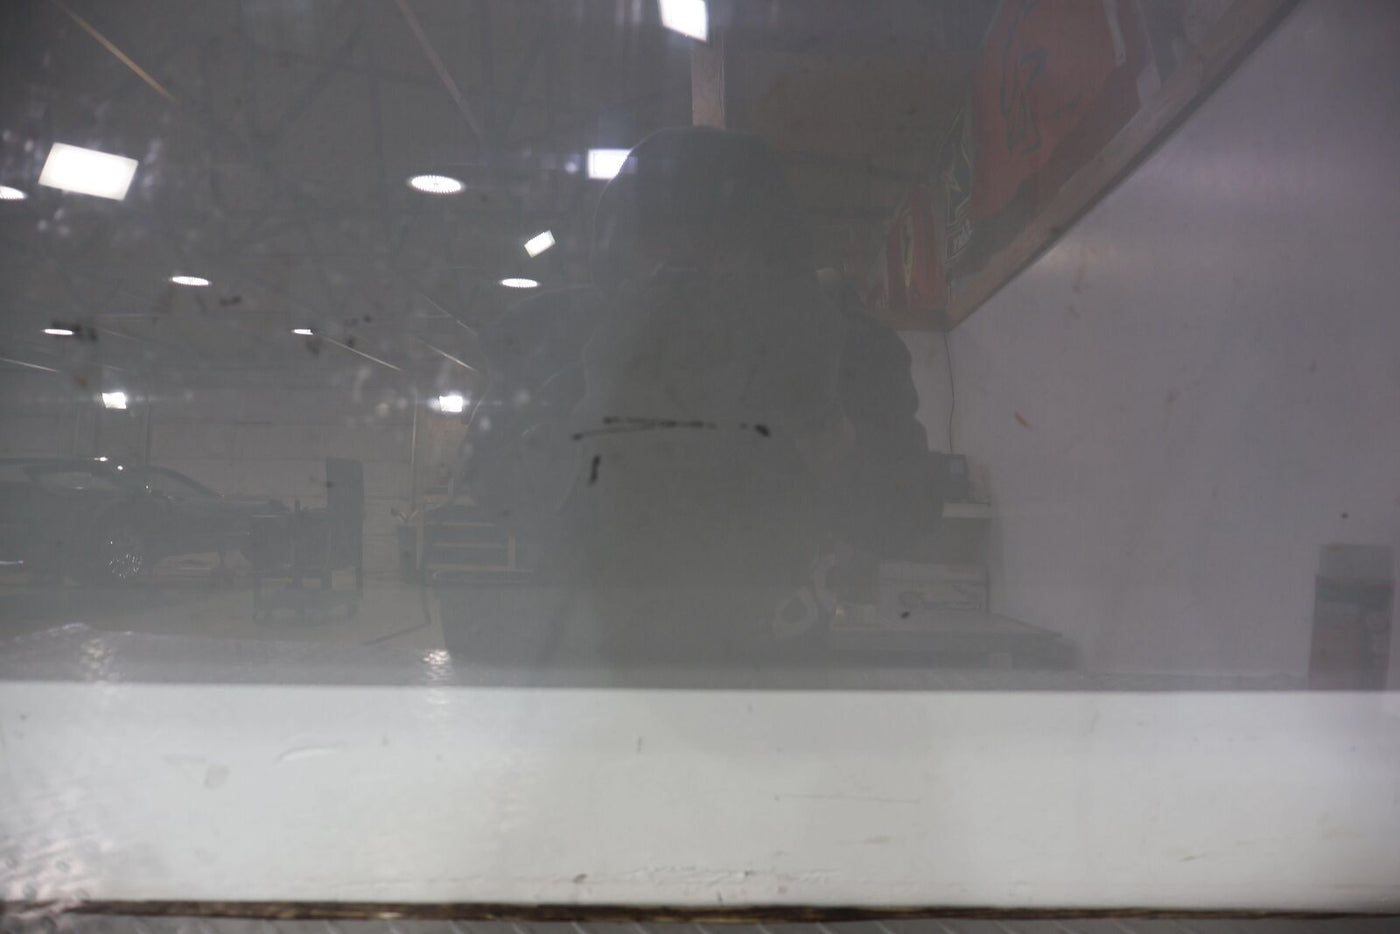 03-06 Chevy SSR Front Left LH Driver Door Window Glass (Self Tint)